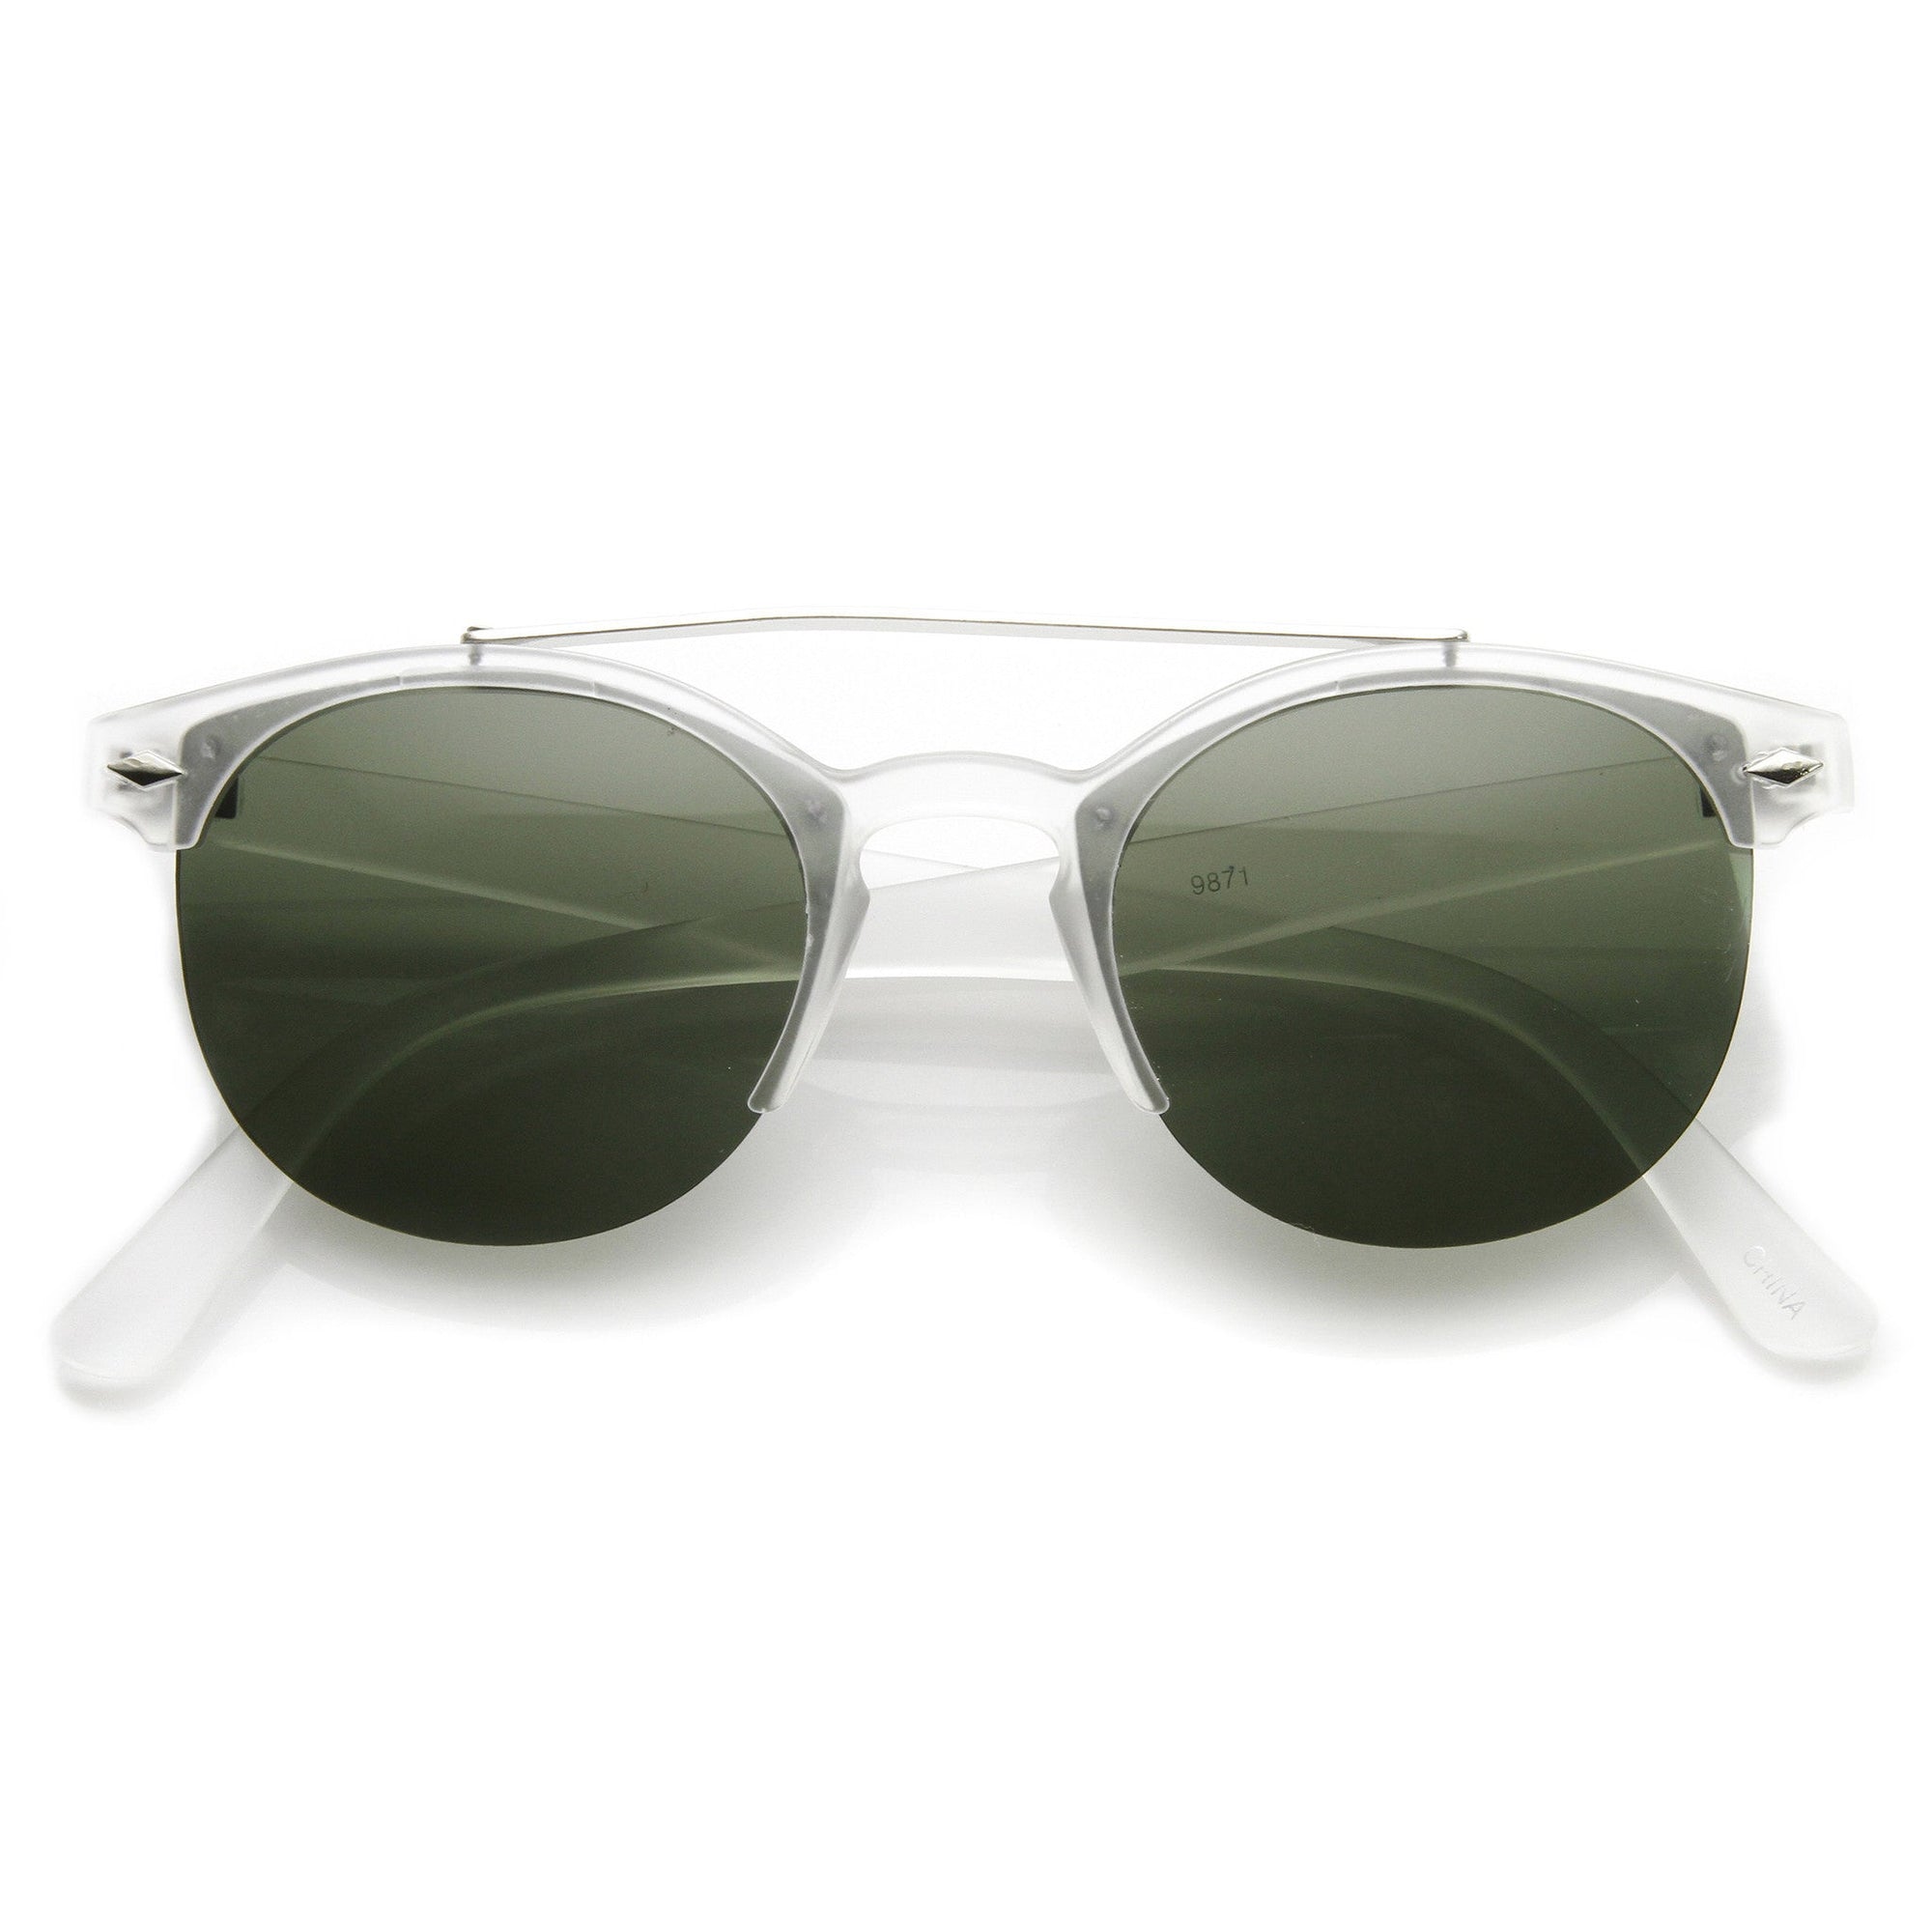 Indie Dapper Vintage Round Half Frame With Crossbar Fashion Sunglasses 9172